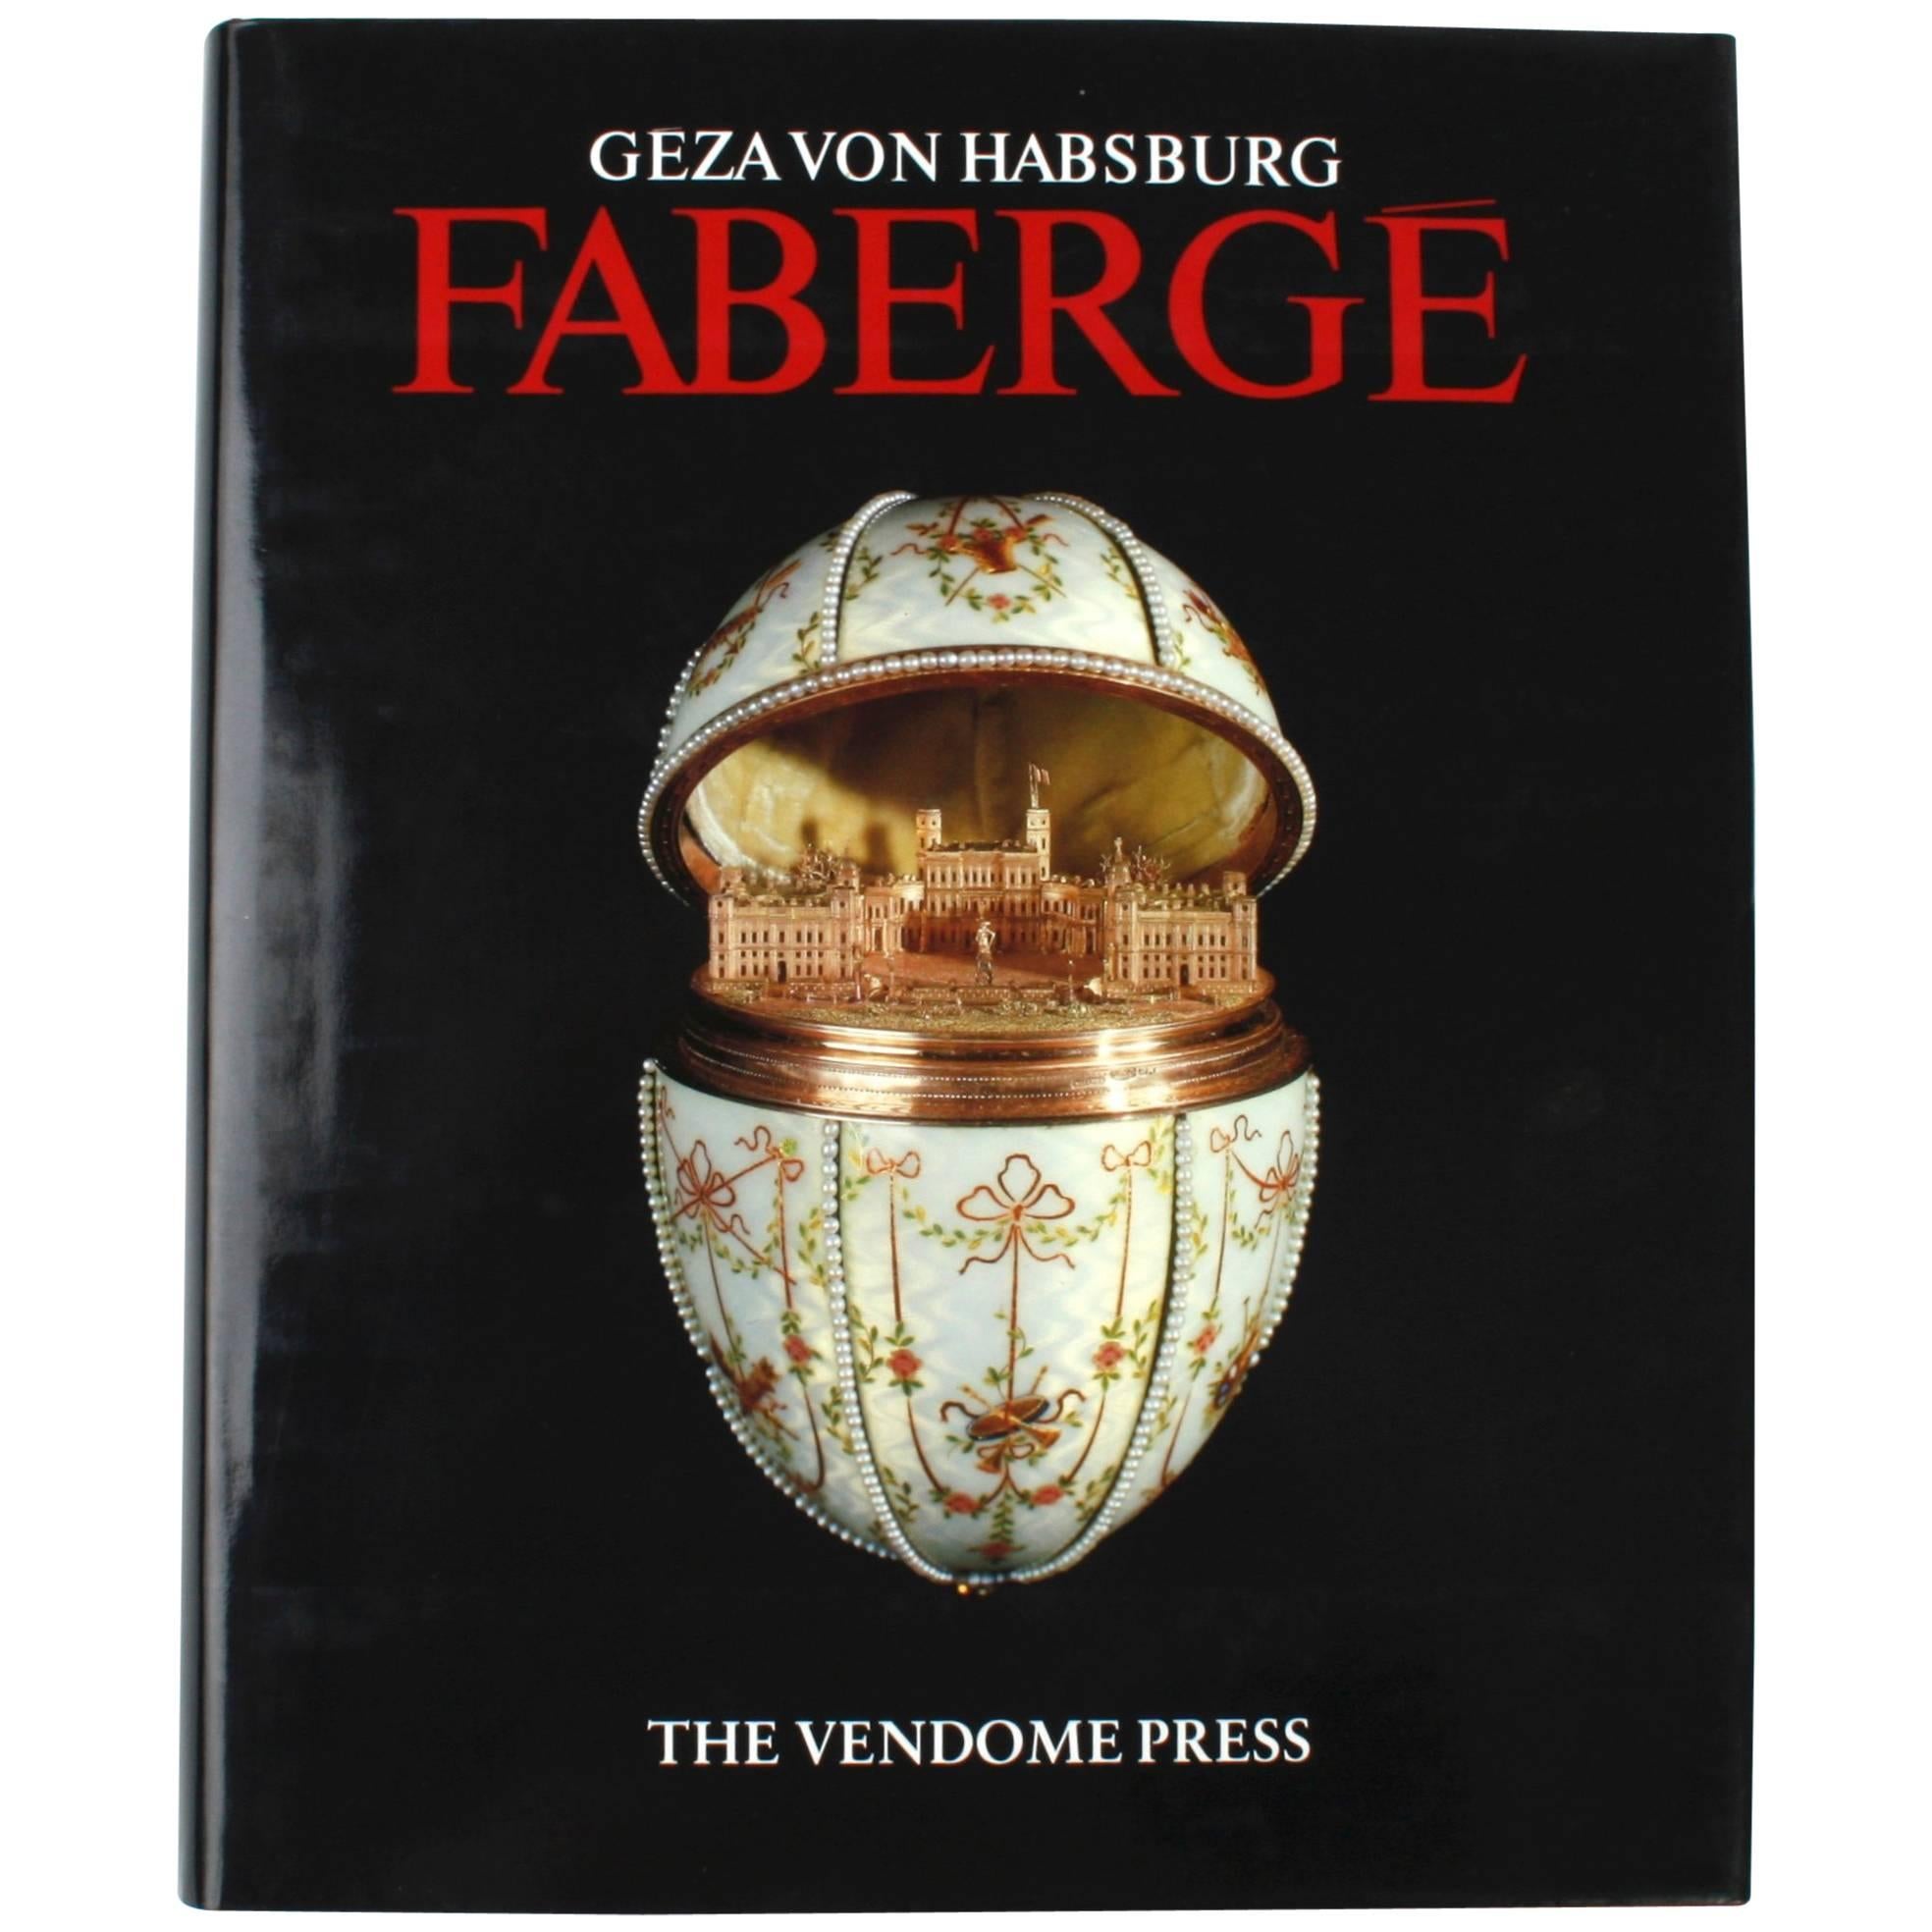 "Fabergé by Geza von Habsburg" Book